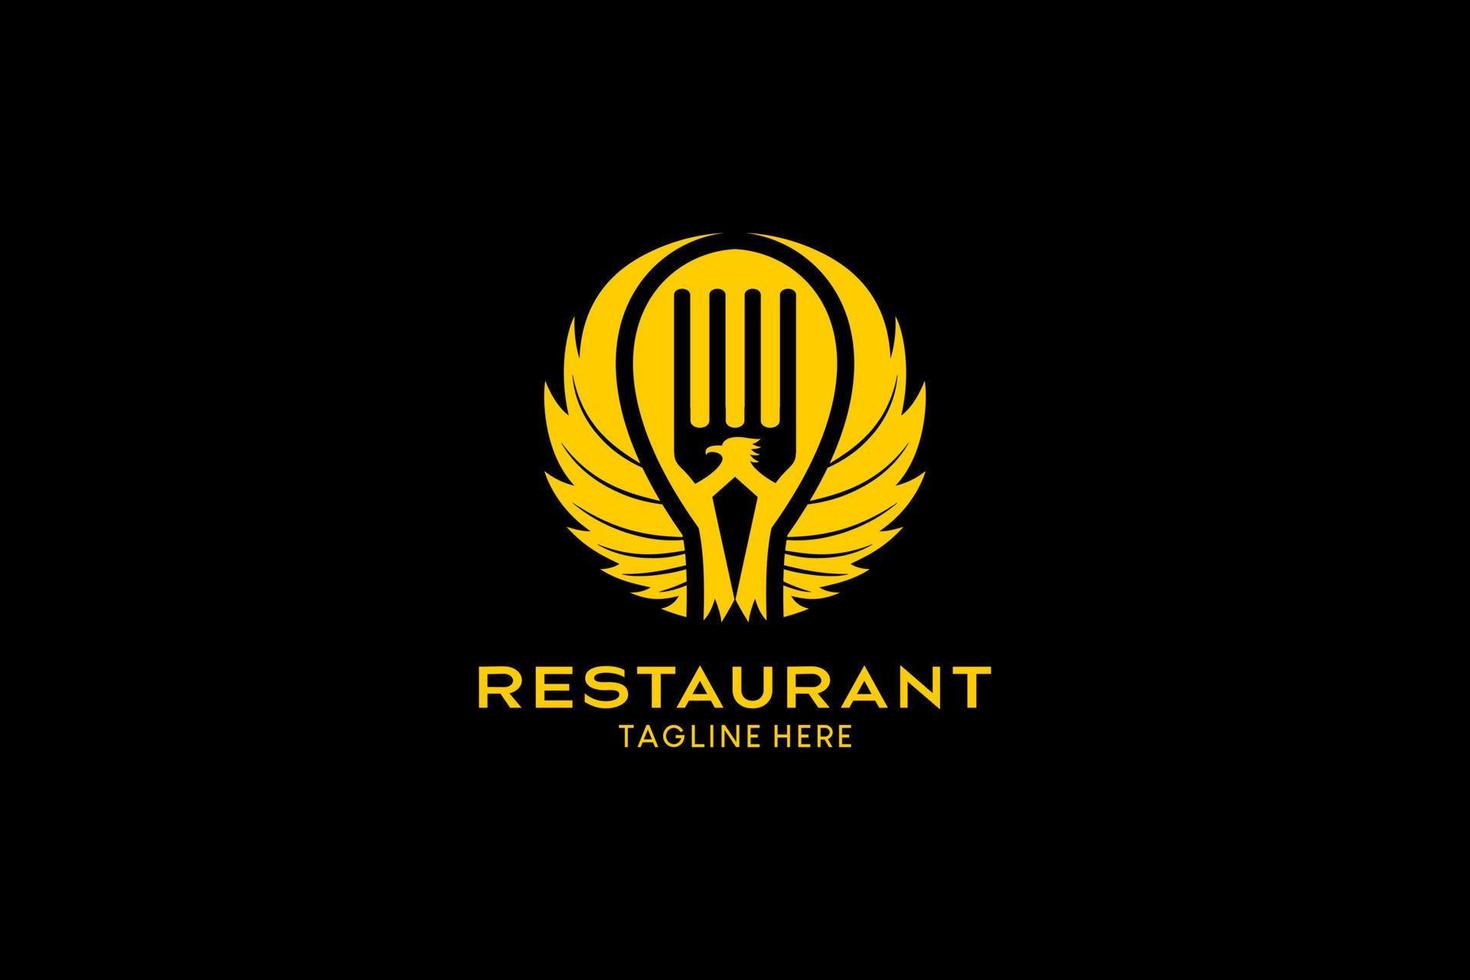 Restaurant-Logo-Design mit kreativem Konzept, Löffel, Gabelelementen kombiniert mit Vogelflügeln. Premium-Vektor-Logo-Illustration vektor